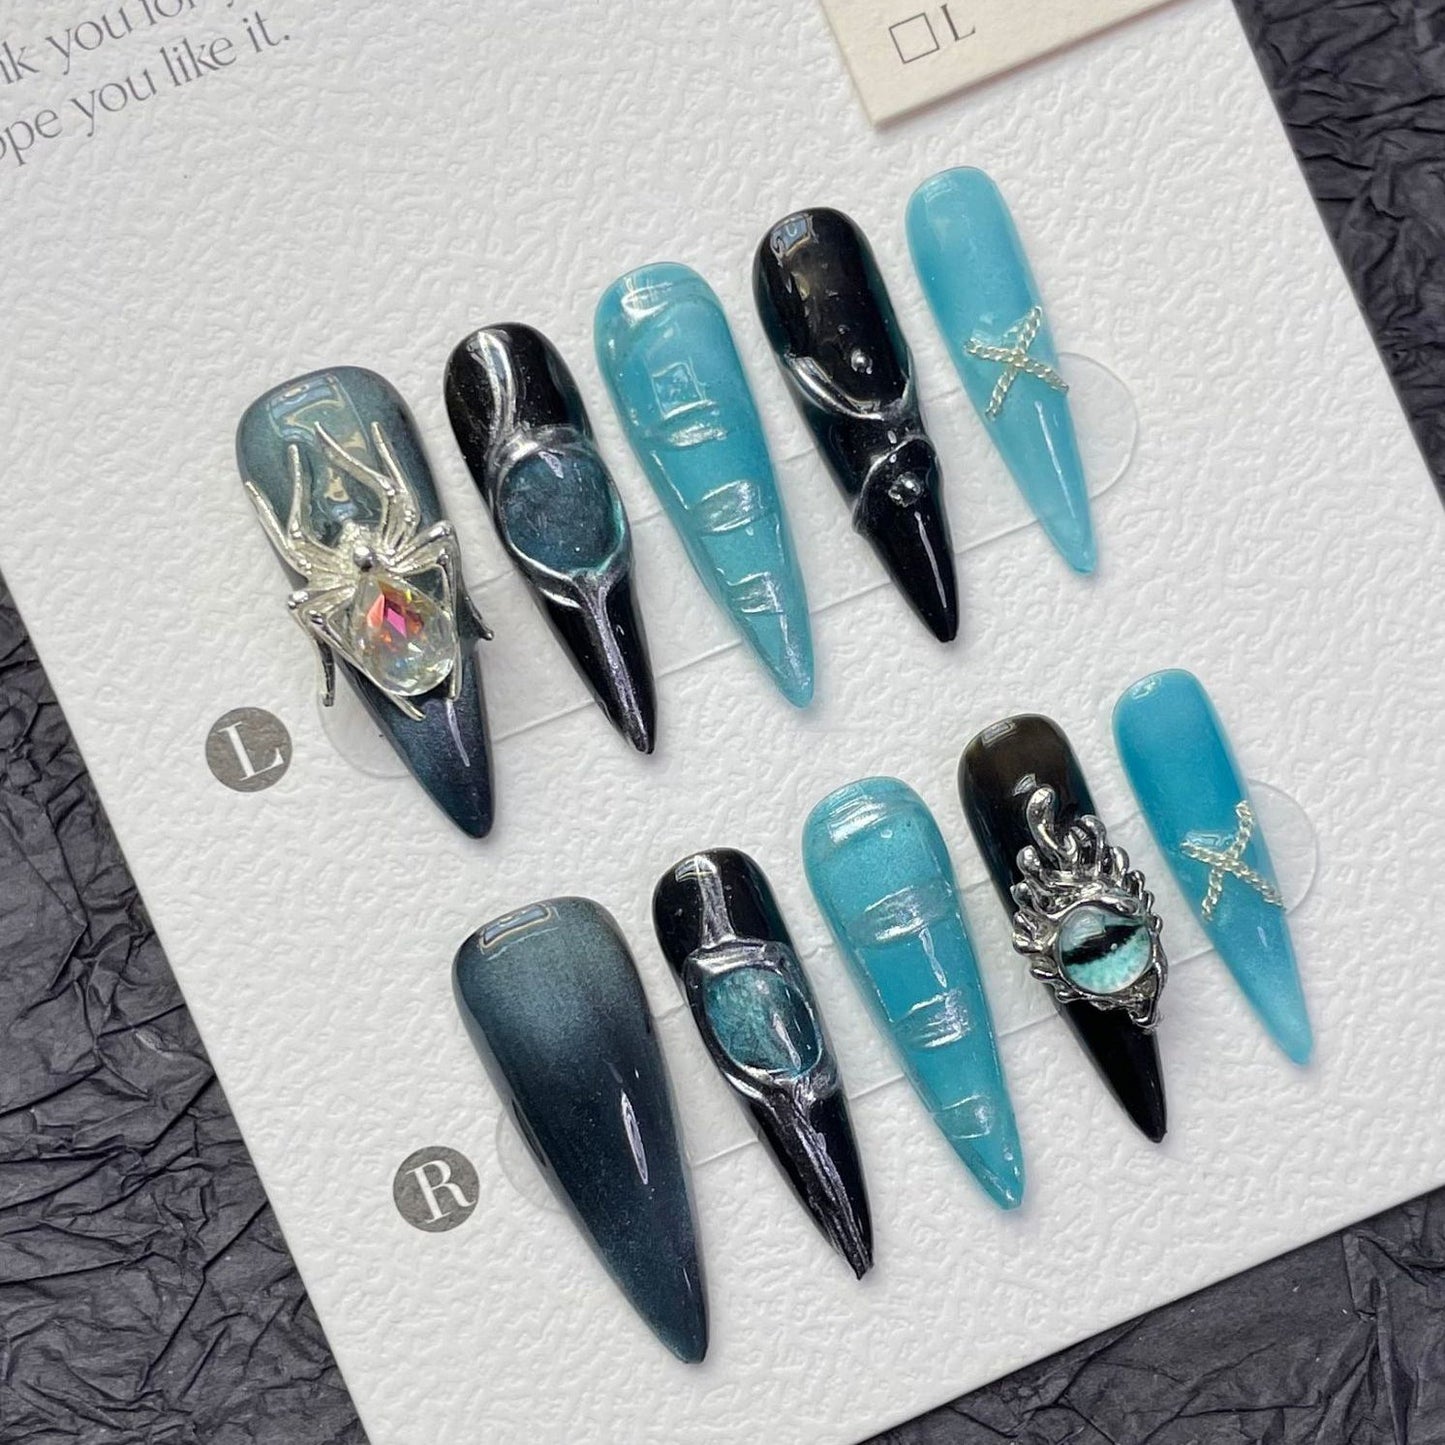 1302 Spider Cat's Eye stijl press-on nagels 100% handgemaakte kunstnagels zwart blauw